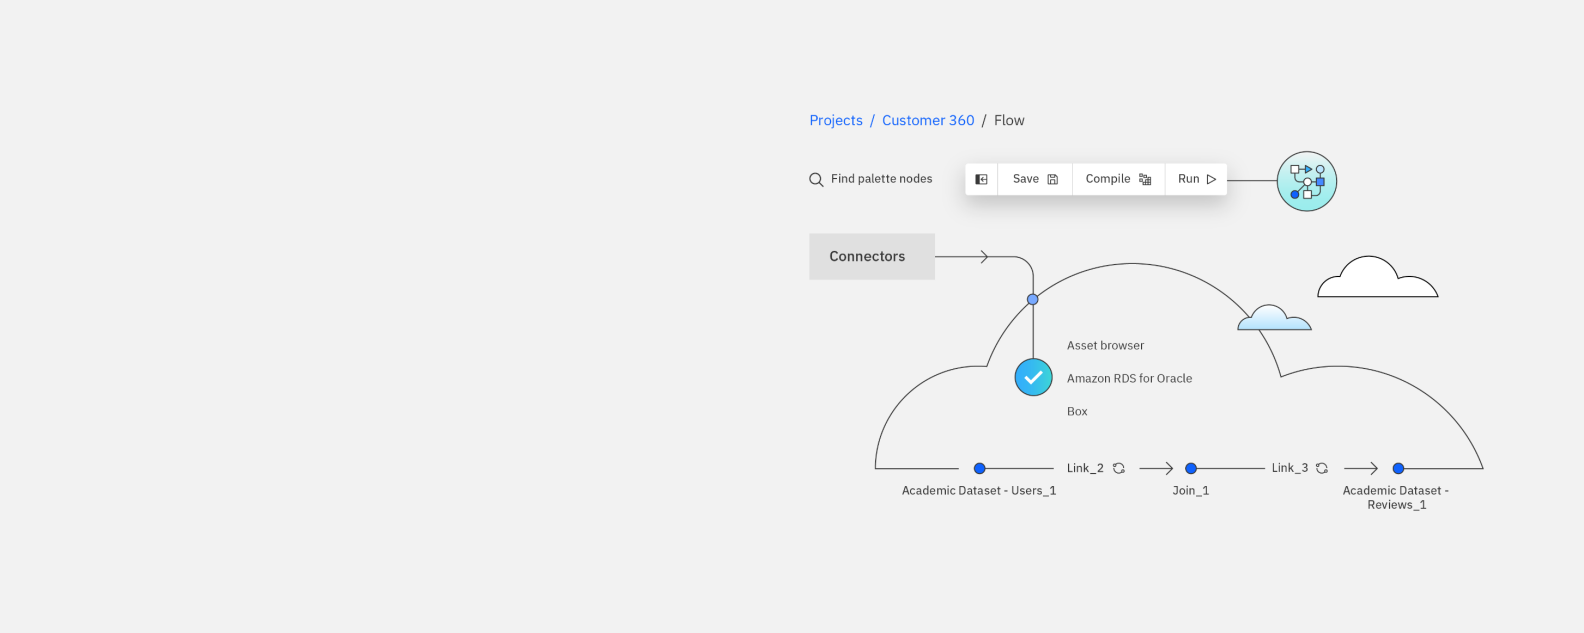 Captura de pantalla que muestra los elementos del producto: flujo de clientes, conectores, activos, conjunto de datos